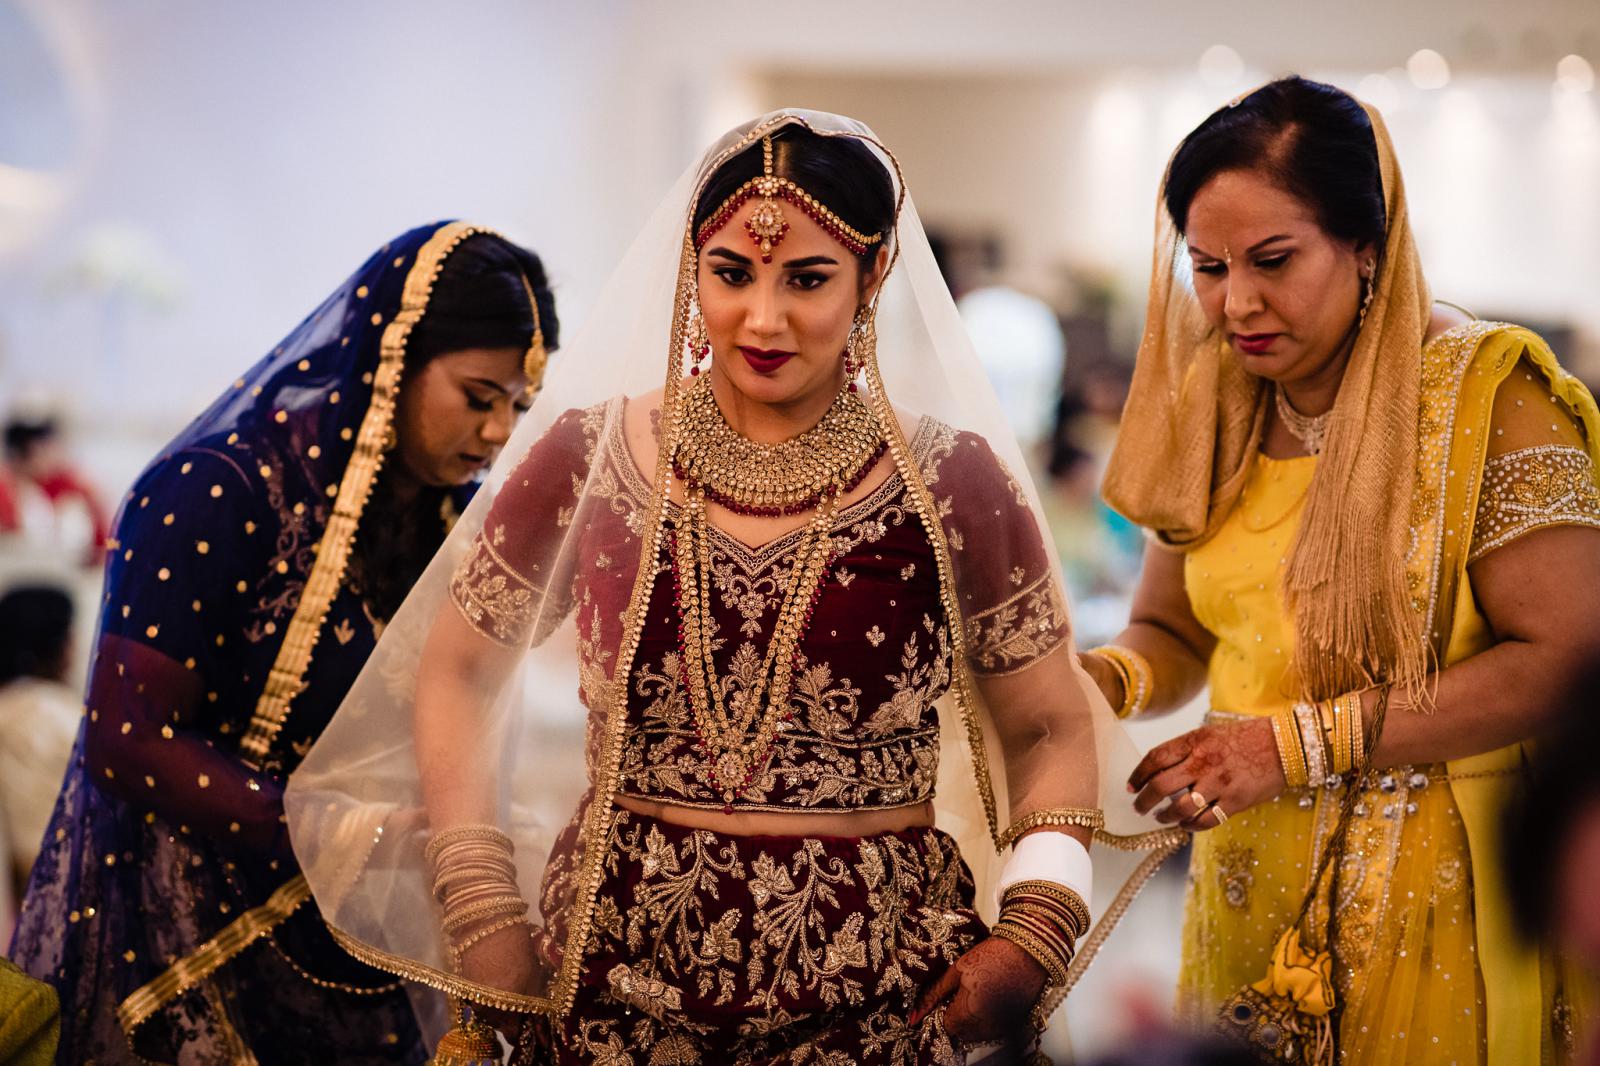 bruid ziet bruidegom voor het eerst tijdens Trouwceremonie hindoestaanse bruiloft door trouwfotograaf rey events almere